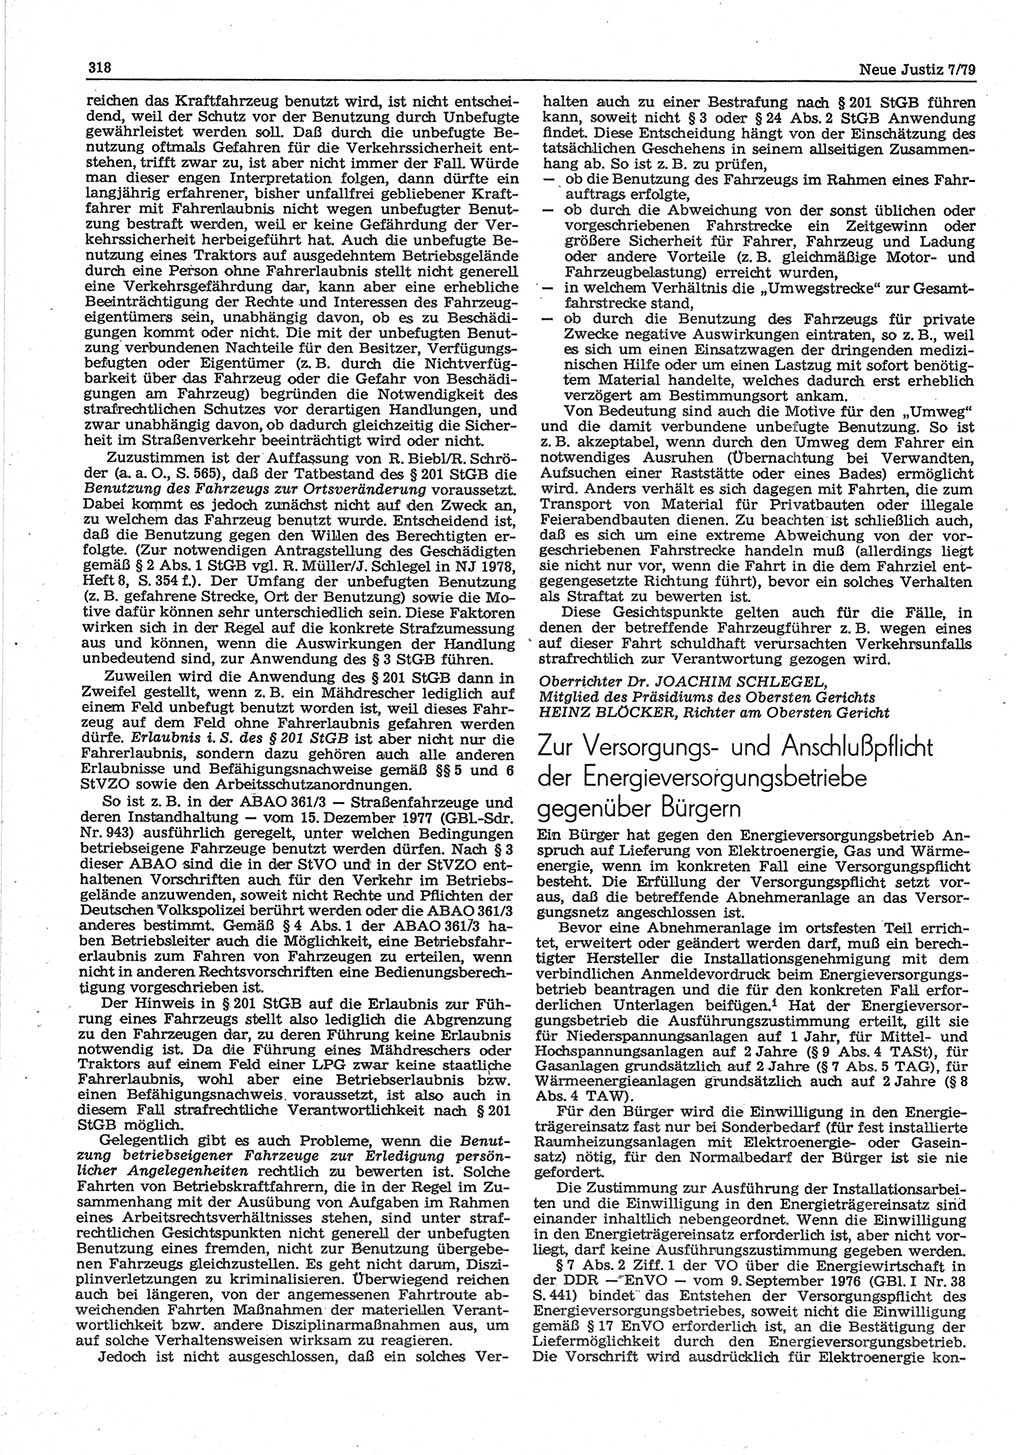 Neue Justiz (NJ), Zeitschrift für sozialistisches Recht und Gesetzlichkeit [Deutsche Demokratische Republik (DDR)], 33. Jahrgang 1979, Seite 318 (NJ DDR 1979, S. 318)